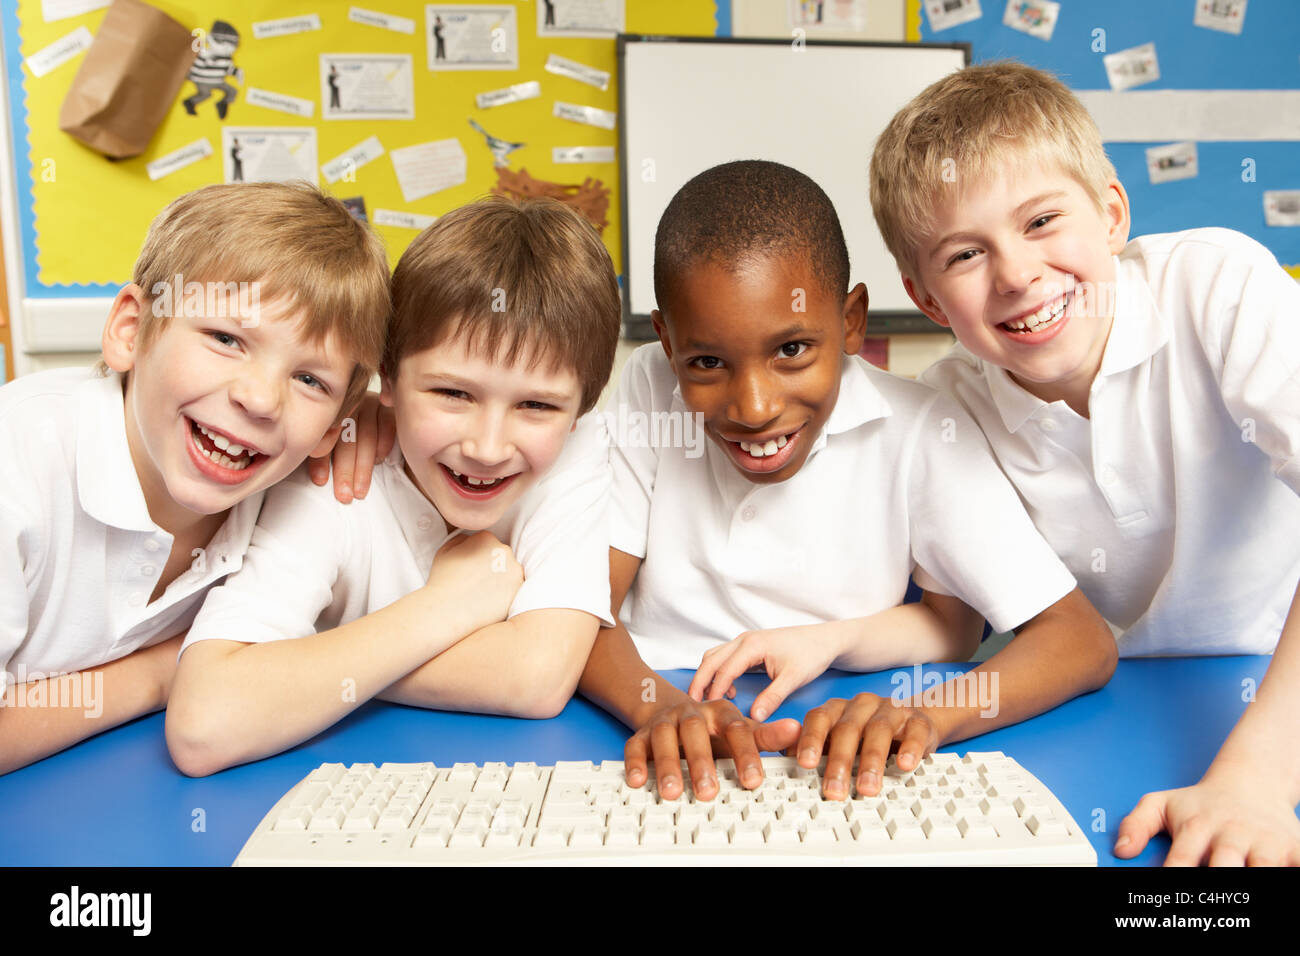 Schoolchildren in IT Class Using Computers Stock Photo